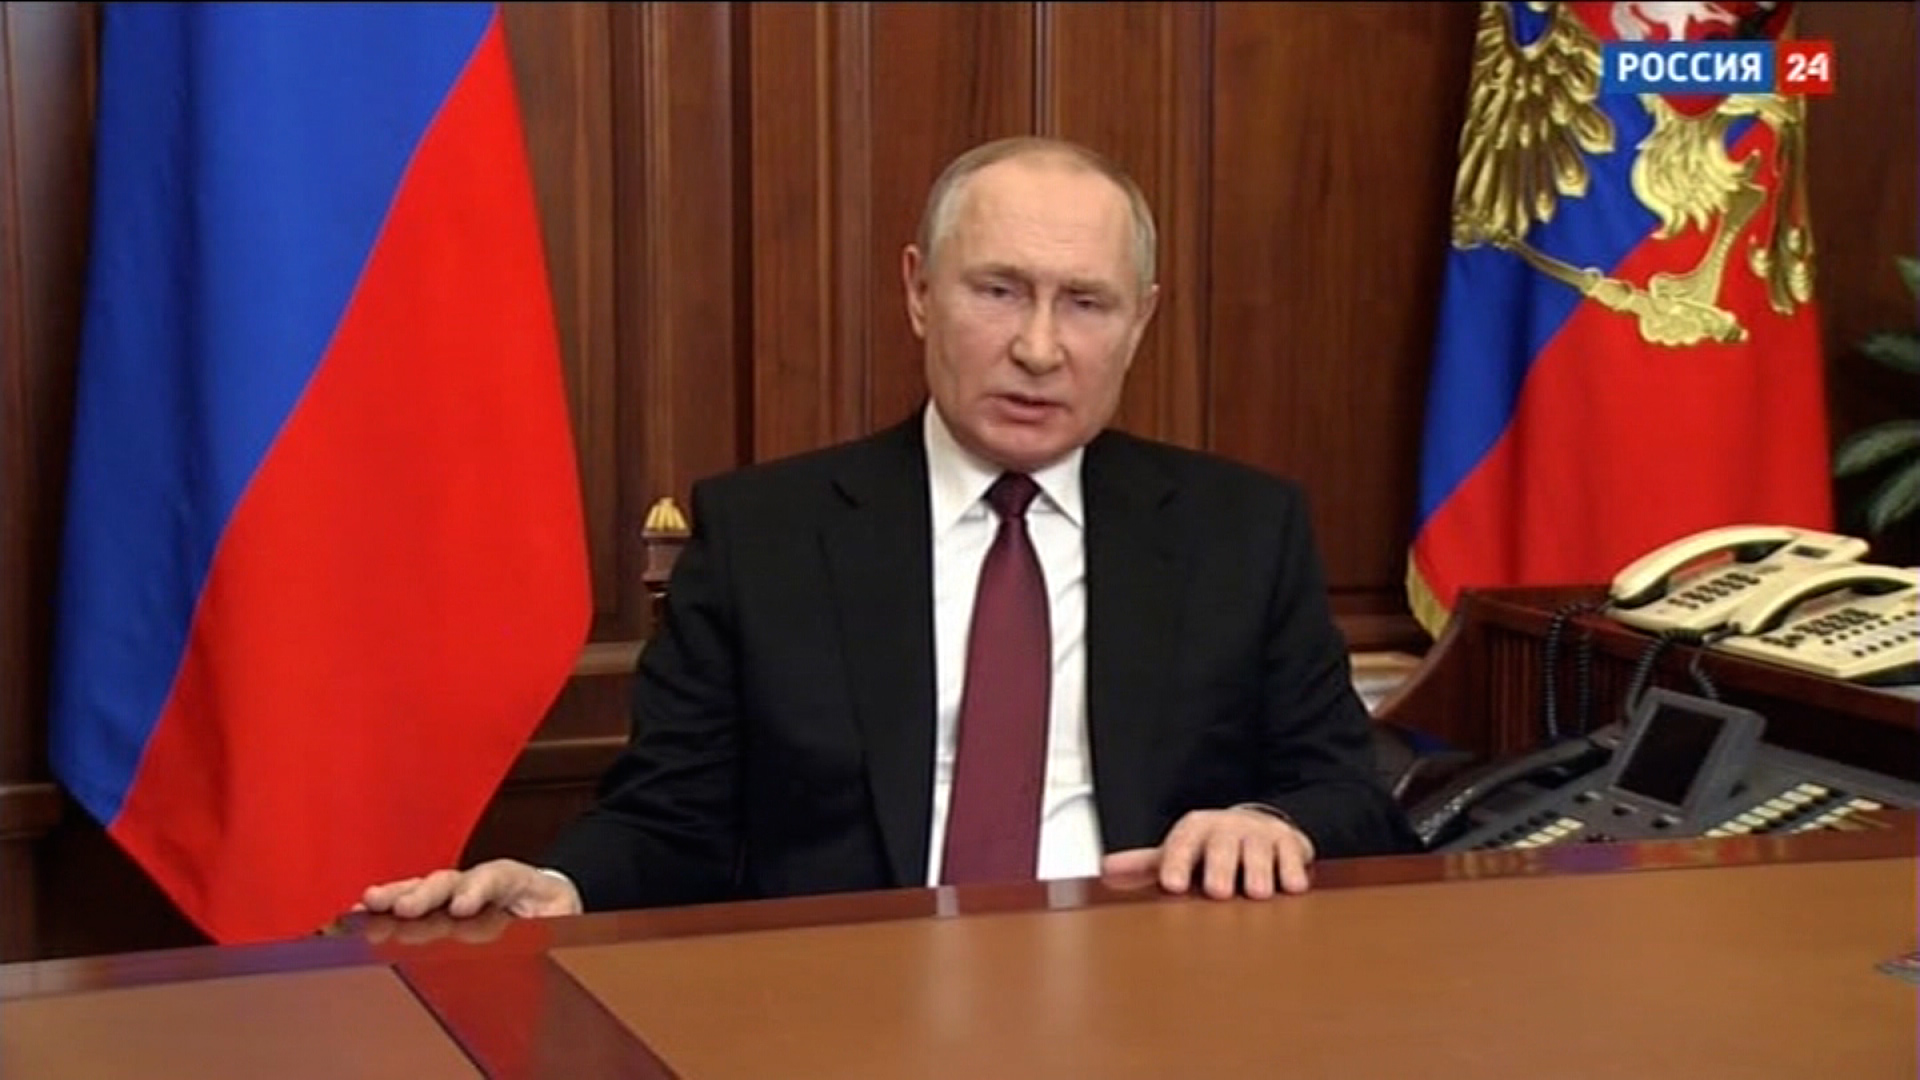 A televisão estatal russa transmitiu um discurso do presidente Vladimir Putin em 24 de fevereiro.